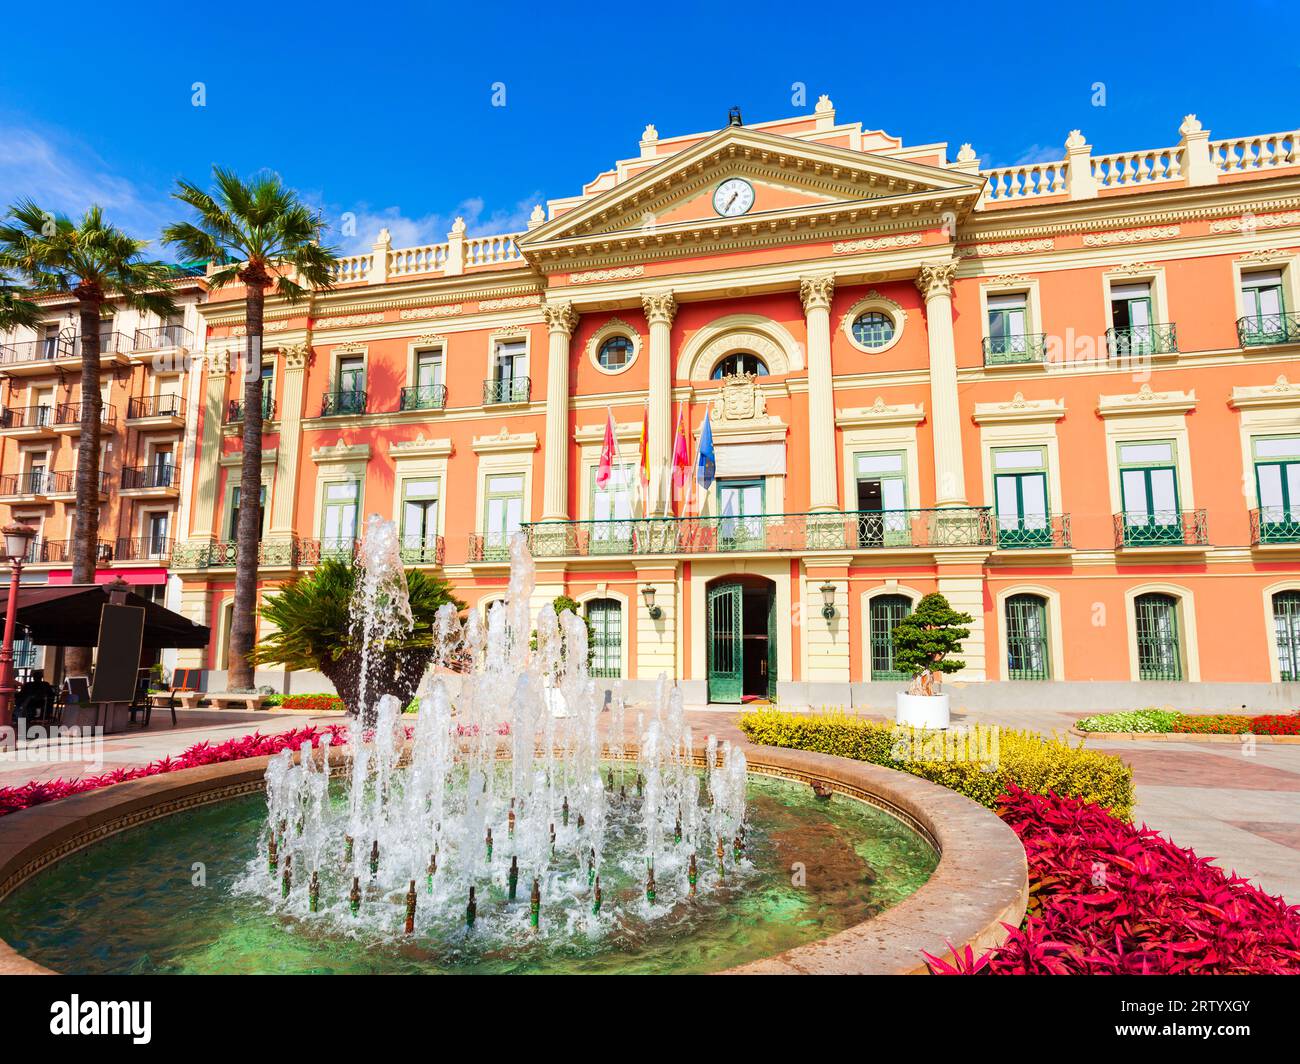 Ayuntamiento de Murcia o Ayuntamiento. Murcia es una ciudad en el sureste de España. Foto de stock